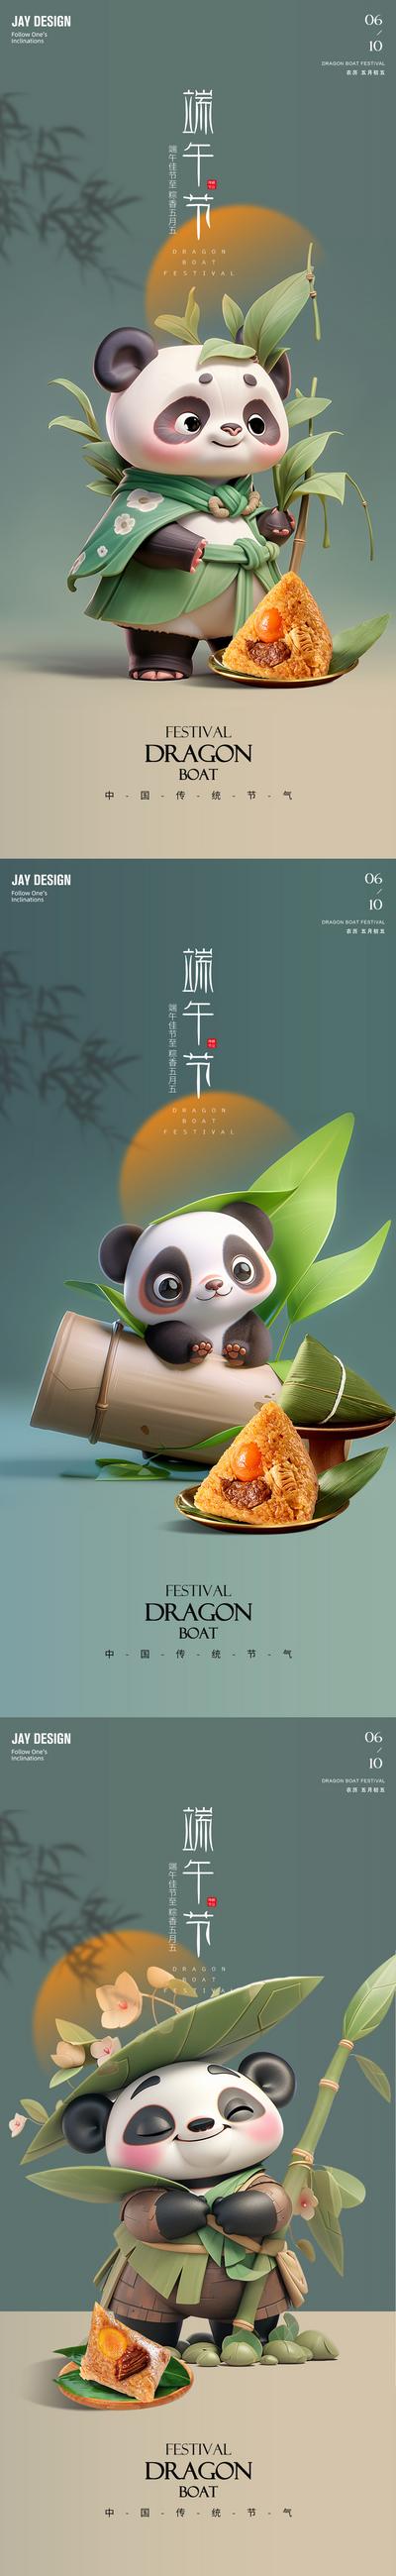 南门网 广告 地产 中式 端午 系列 端午节 中国传统节日 粽子 龙舟 粽叶 生活 意境 排版 熊猫 竹子